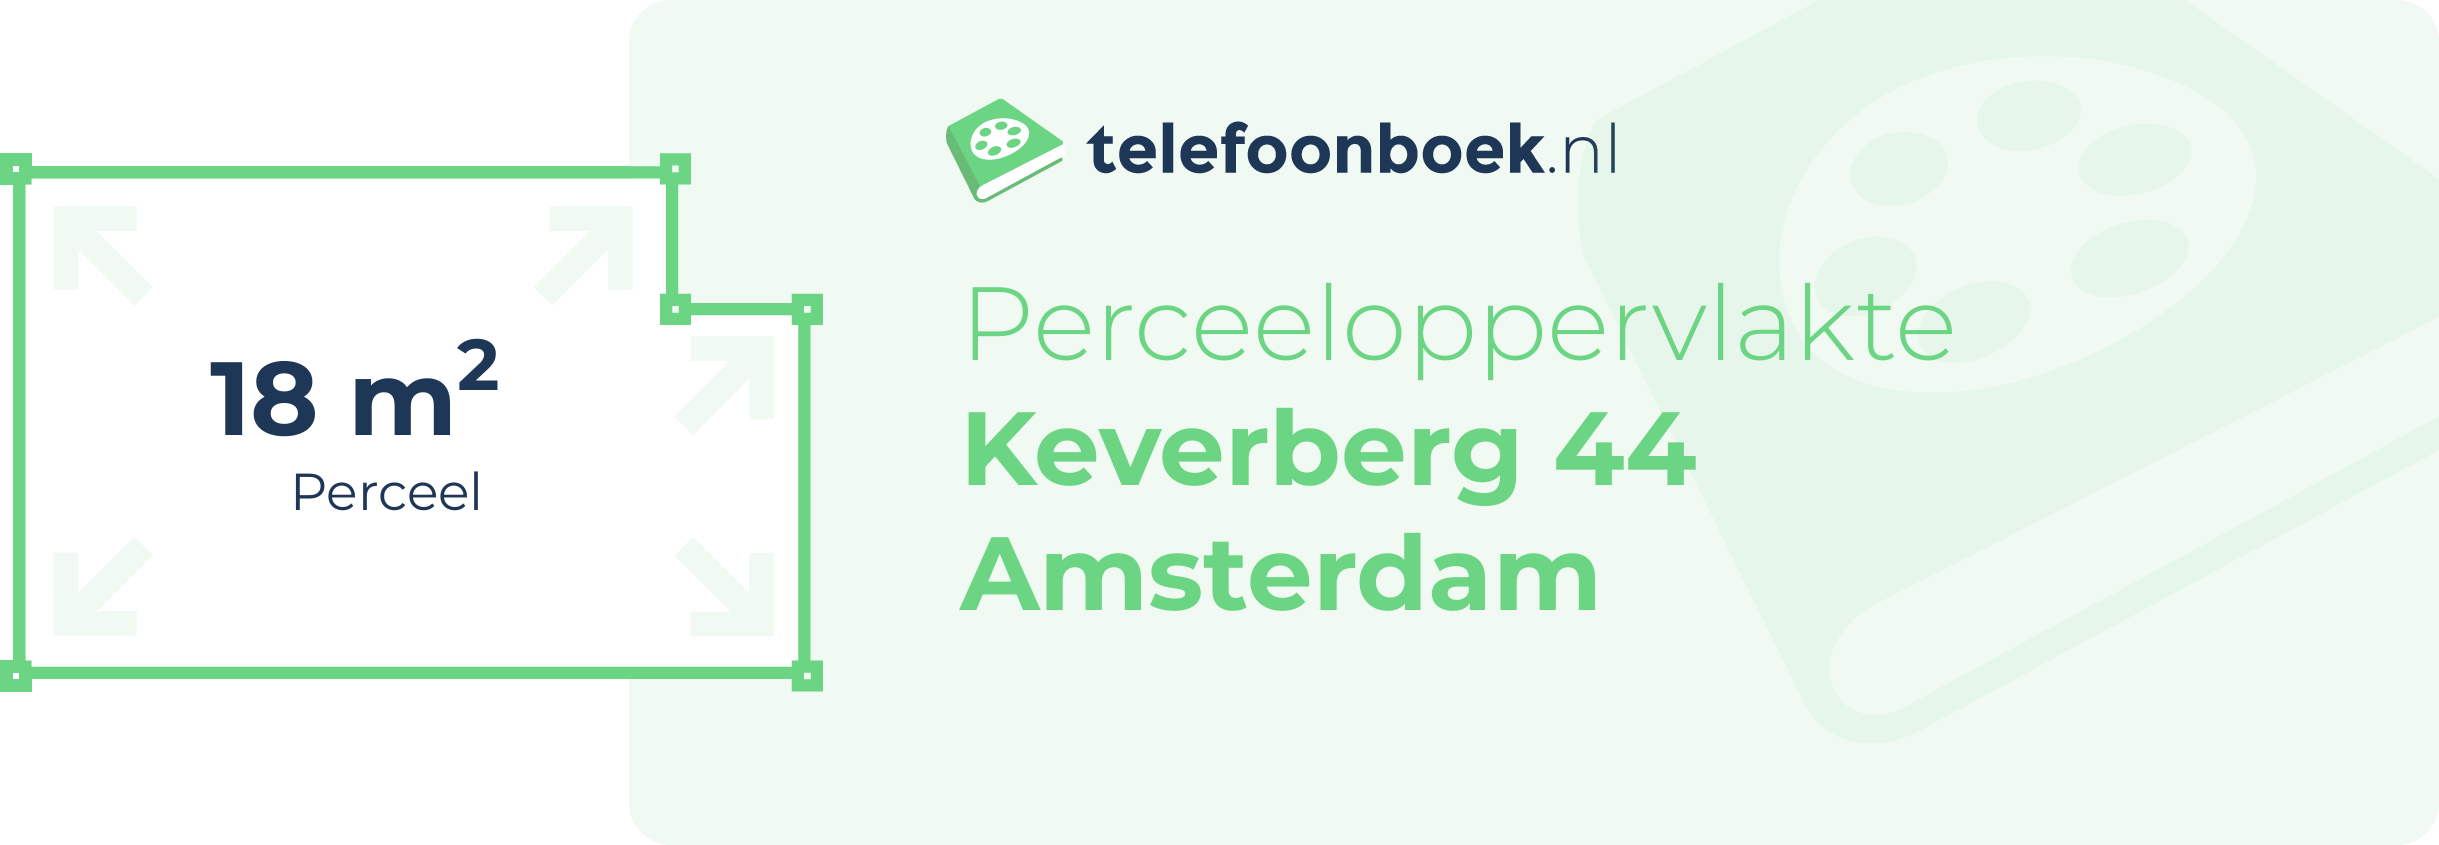 Perceeloppervlakte Keverberg 44 Amsterdam